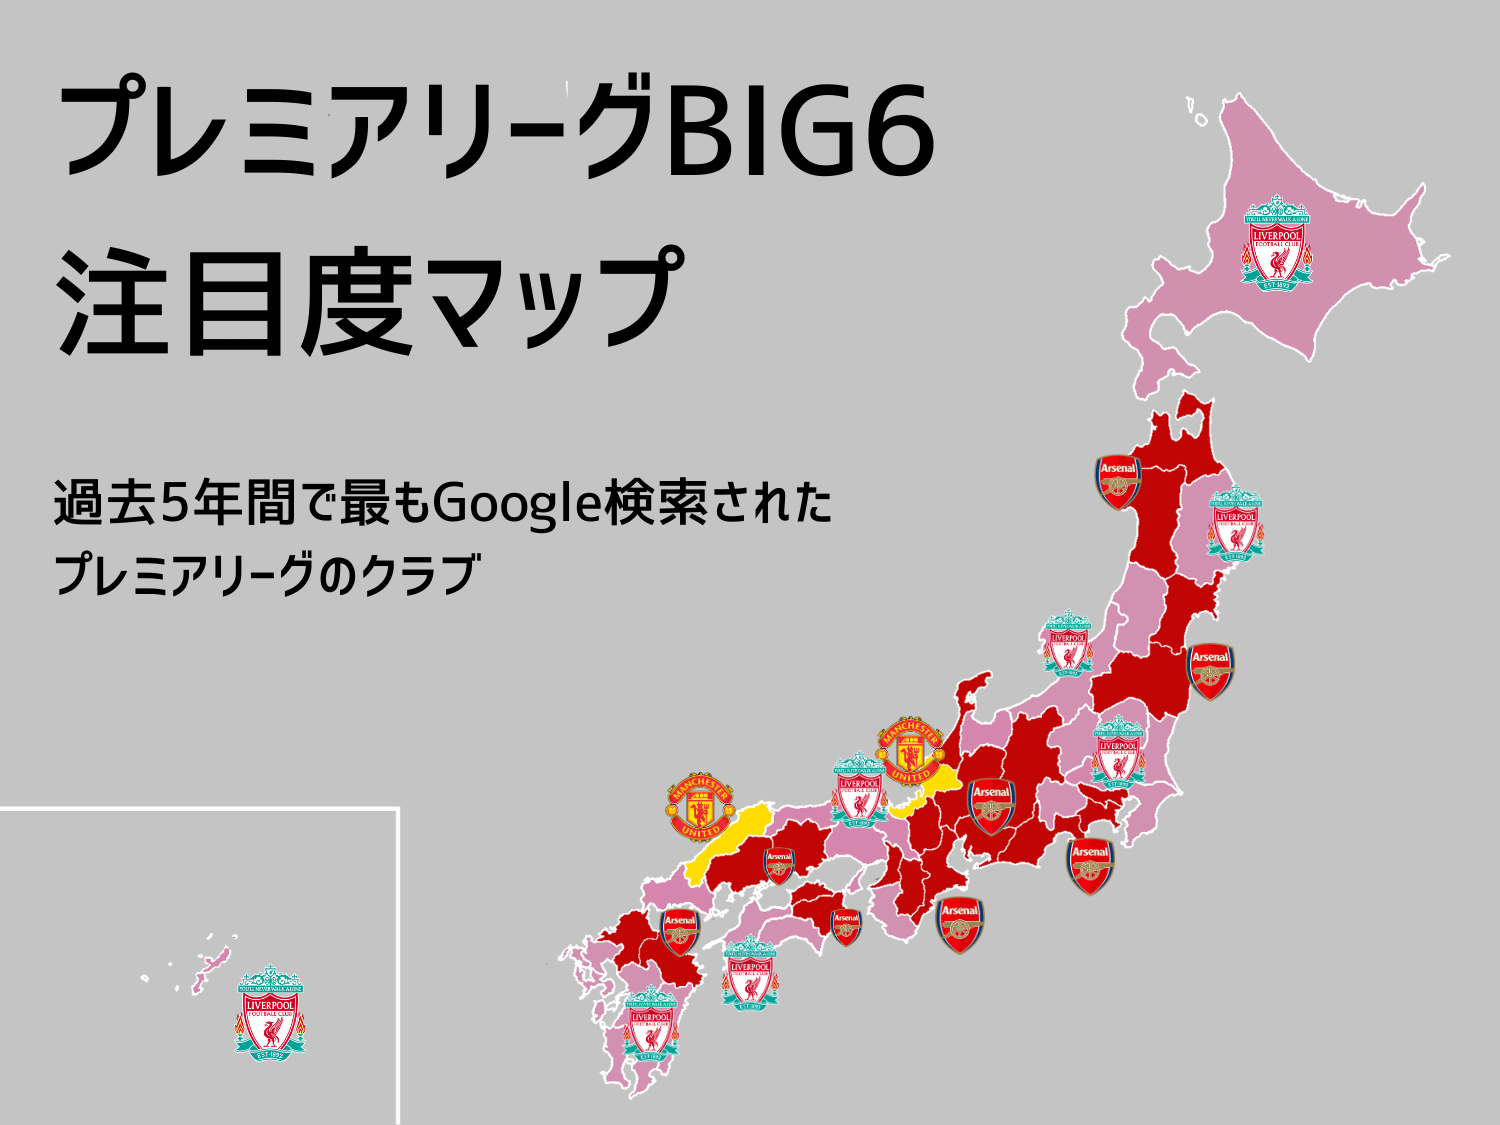 アーセナル リバプール 日本で1番人気のプレミアクラブは 都道府県別に調べてみた マンu好きの2県も 3 3 プレミアリーグ Number Web ナンバー